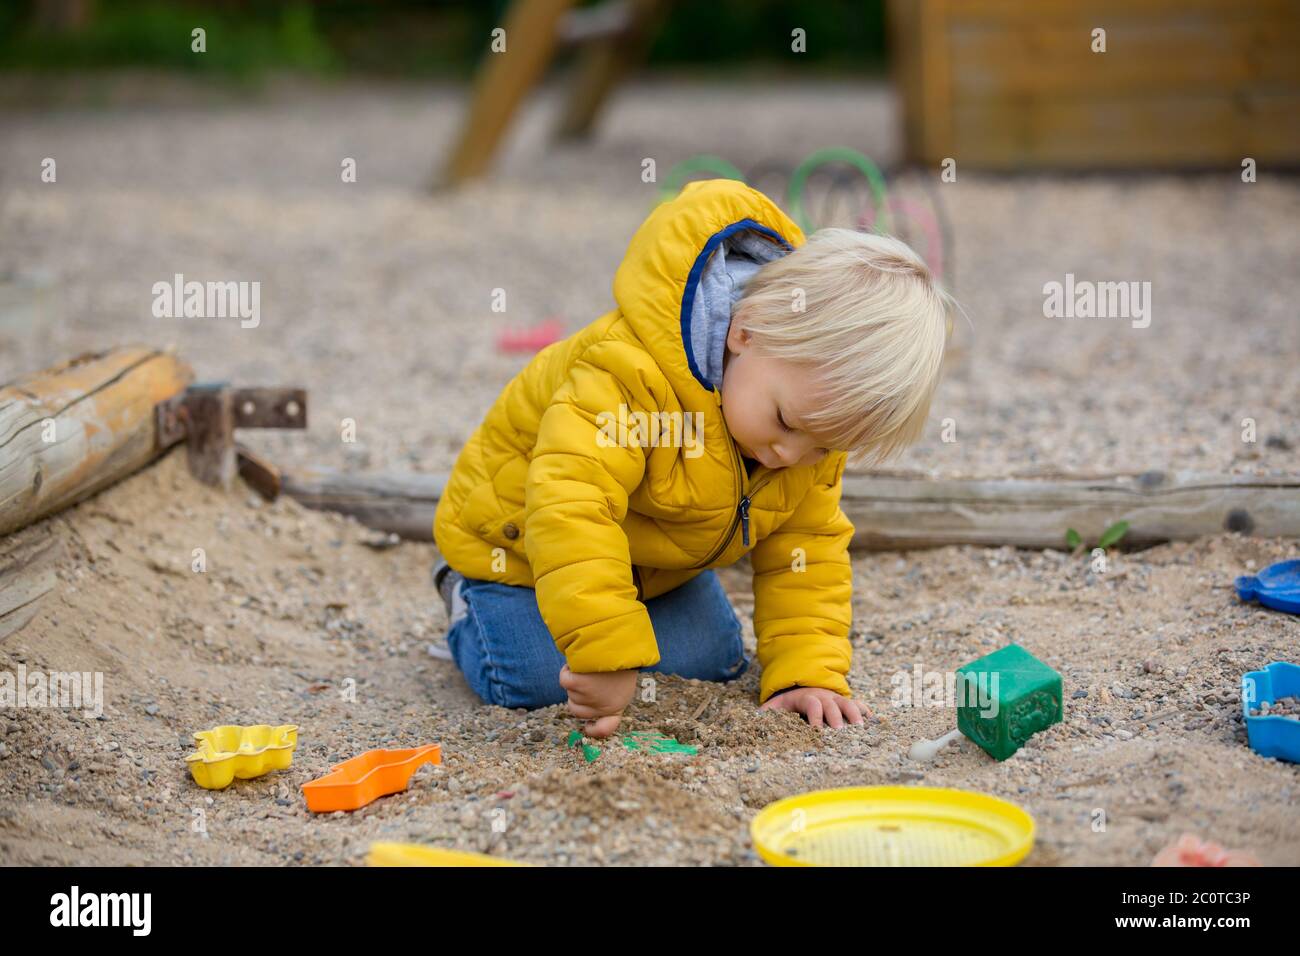 Blonde kleine Kleinkind Kind in gelber Jacke, spielen auf dem Spielplatz,  Herbst sonnigen Tag Stockfotografie - Alamy